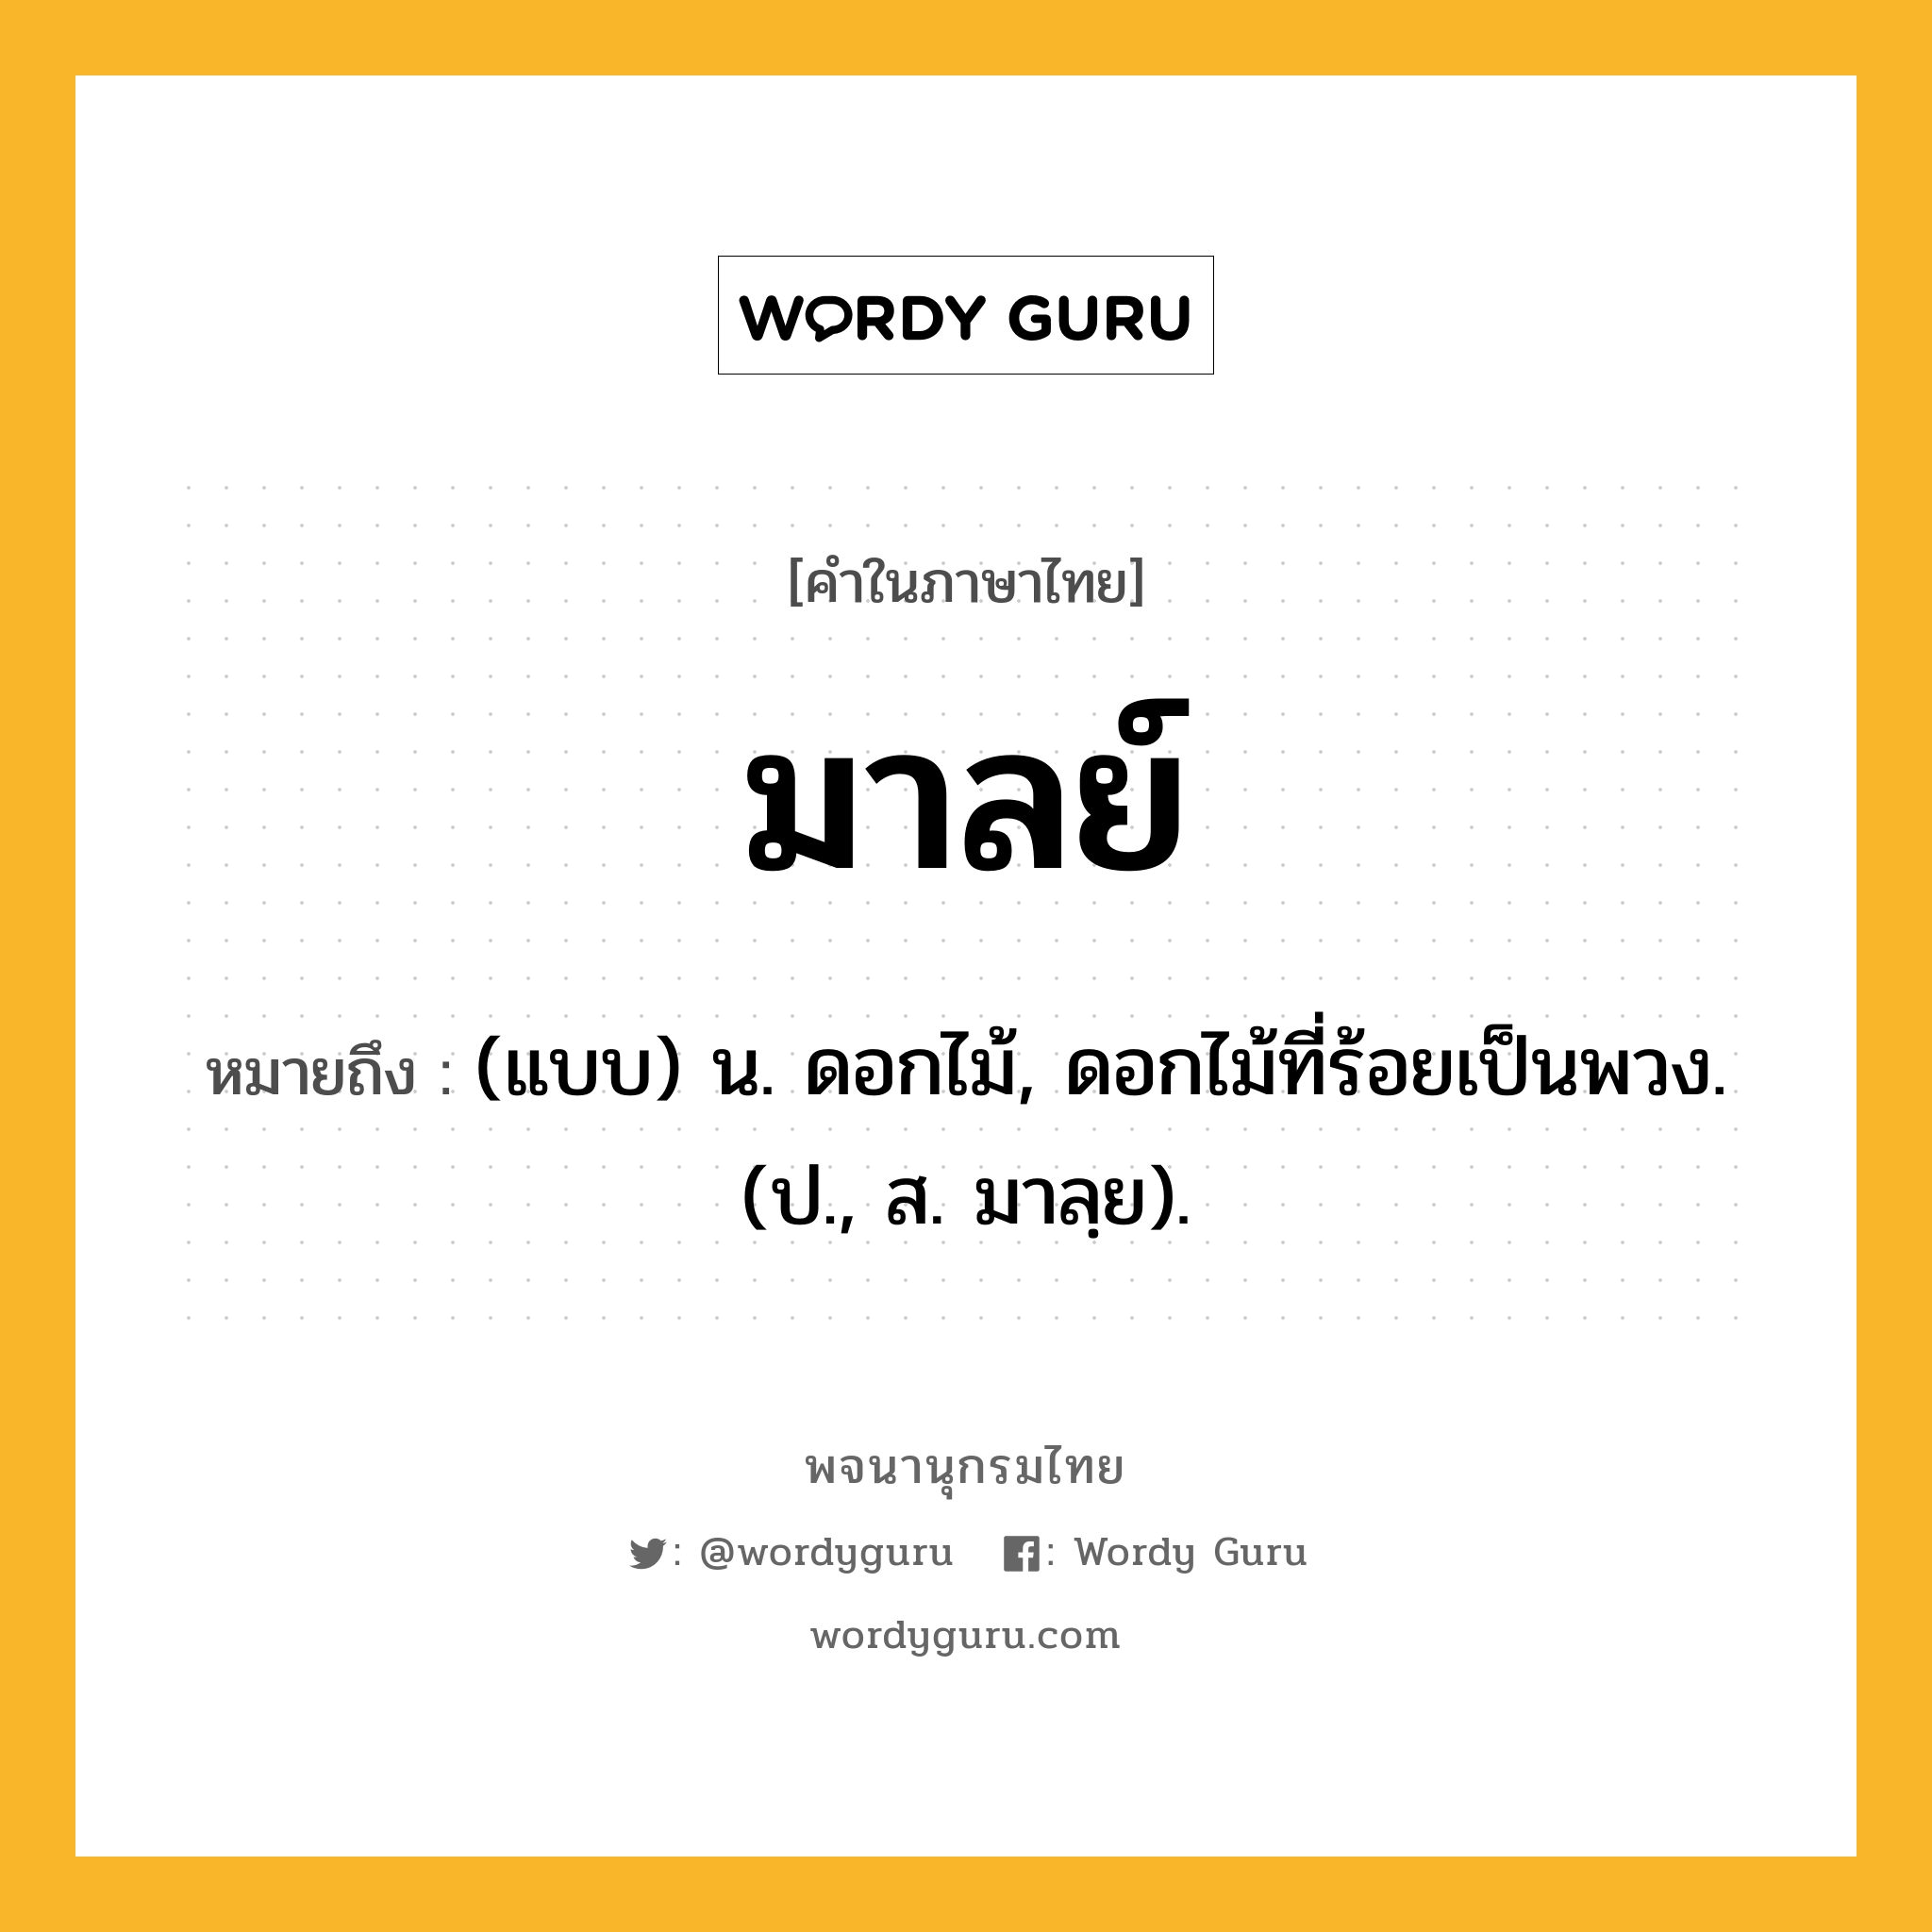 มาลย์ หมายถึงอะไร?, คำในภาษาไทย มาลย์ หมายถึง (แบบ) น. ดอกไม้, ดอกไม้ที่ร้อยเป็นพวง. (ป., ส. มาลฺย).